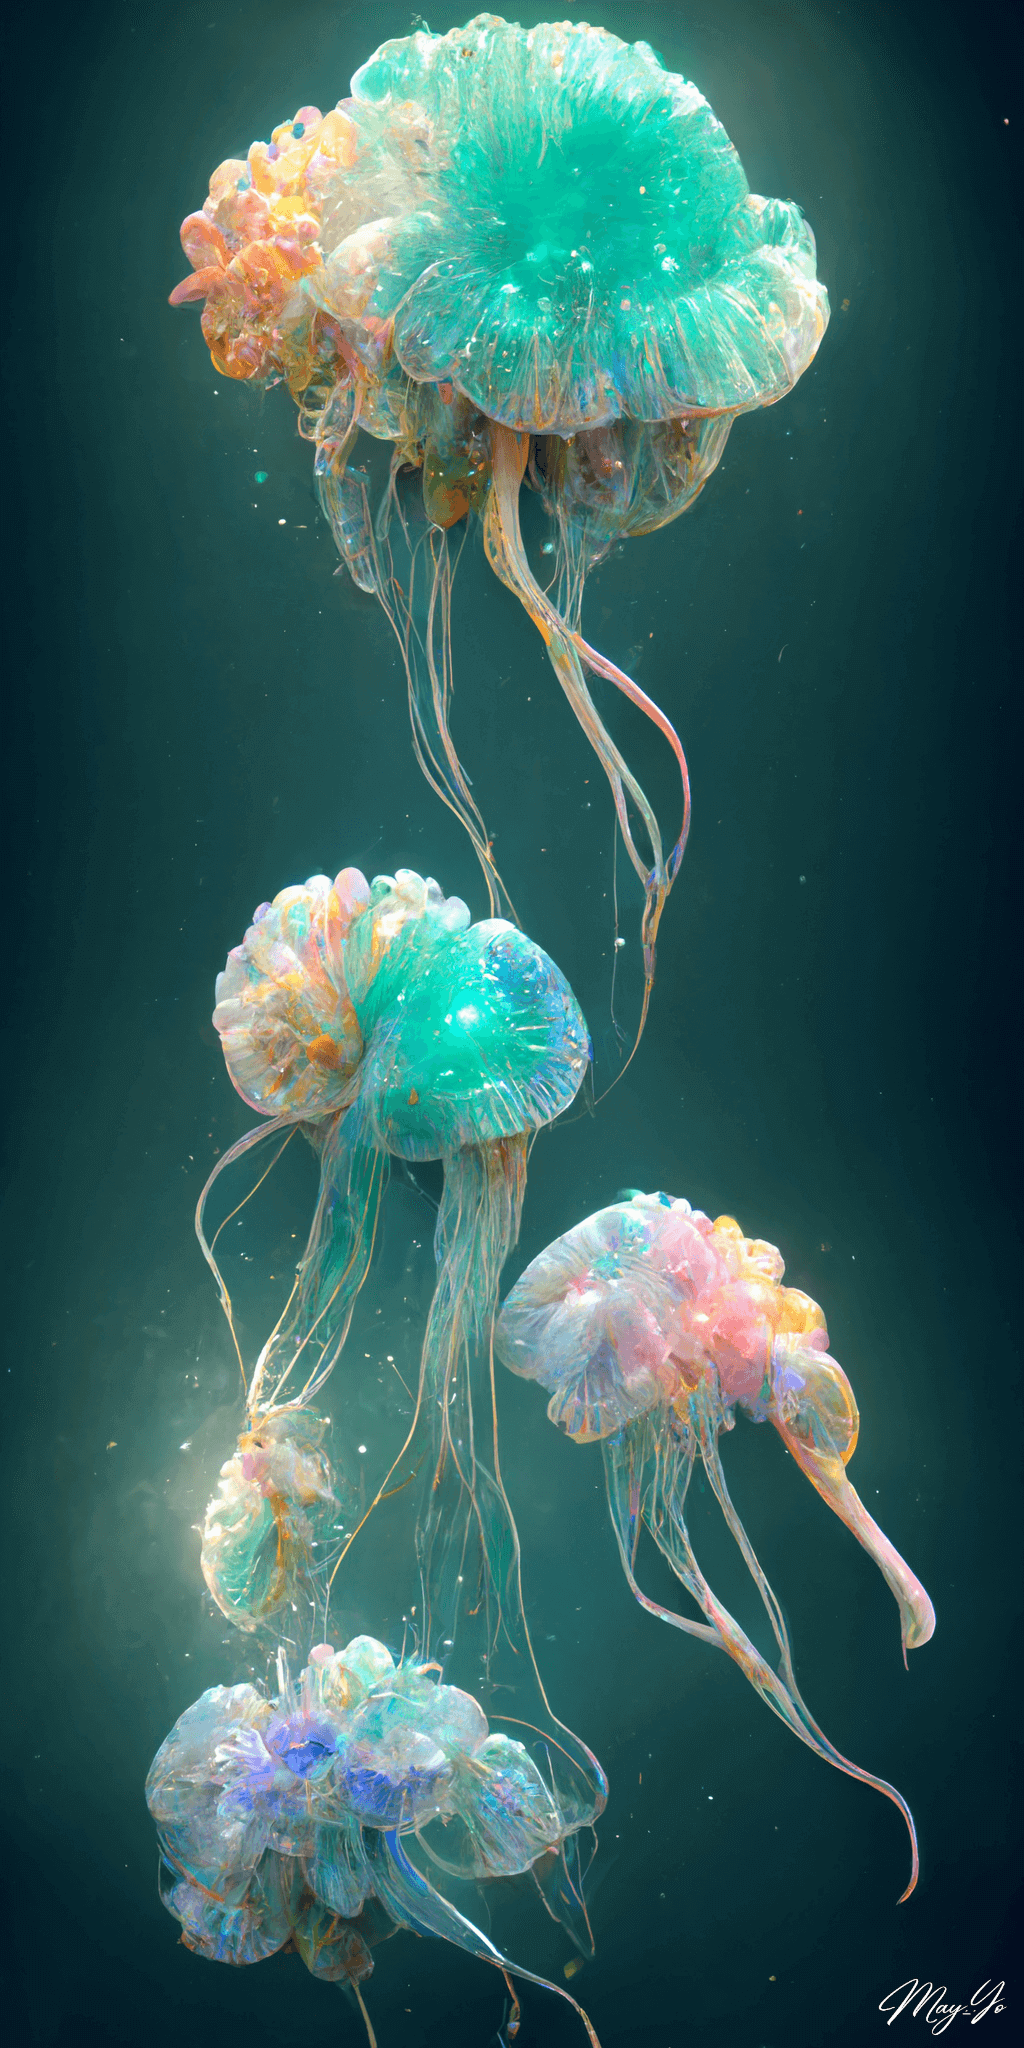 美しく幻想的なクラゲの壁紙イラスト カラフルな光るクラゲの待受 AIイラスト待受 縦長画像 jellyfish illustration fiction art